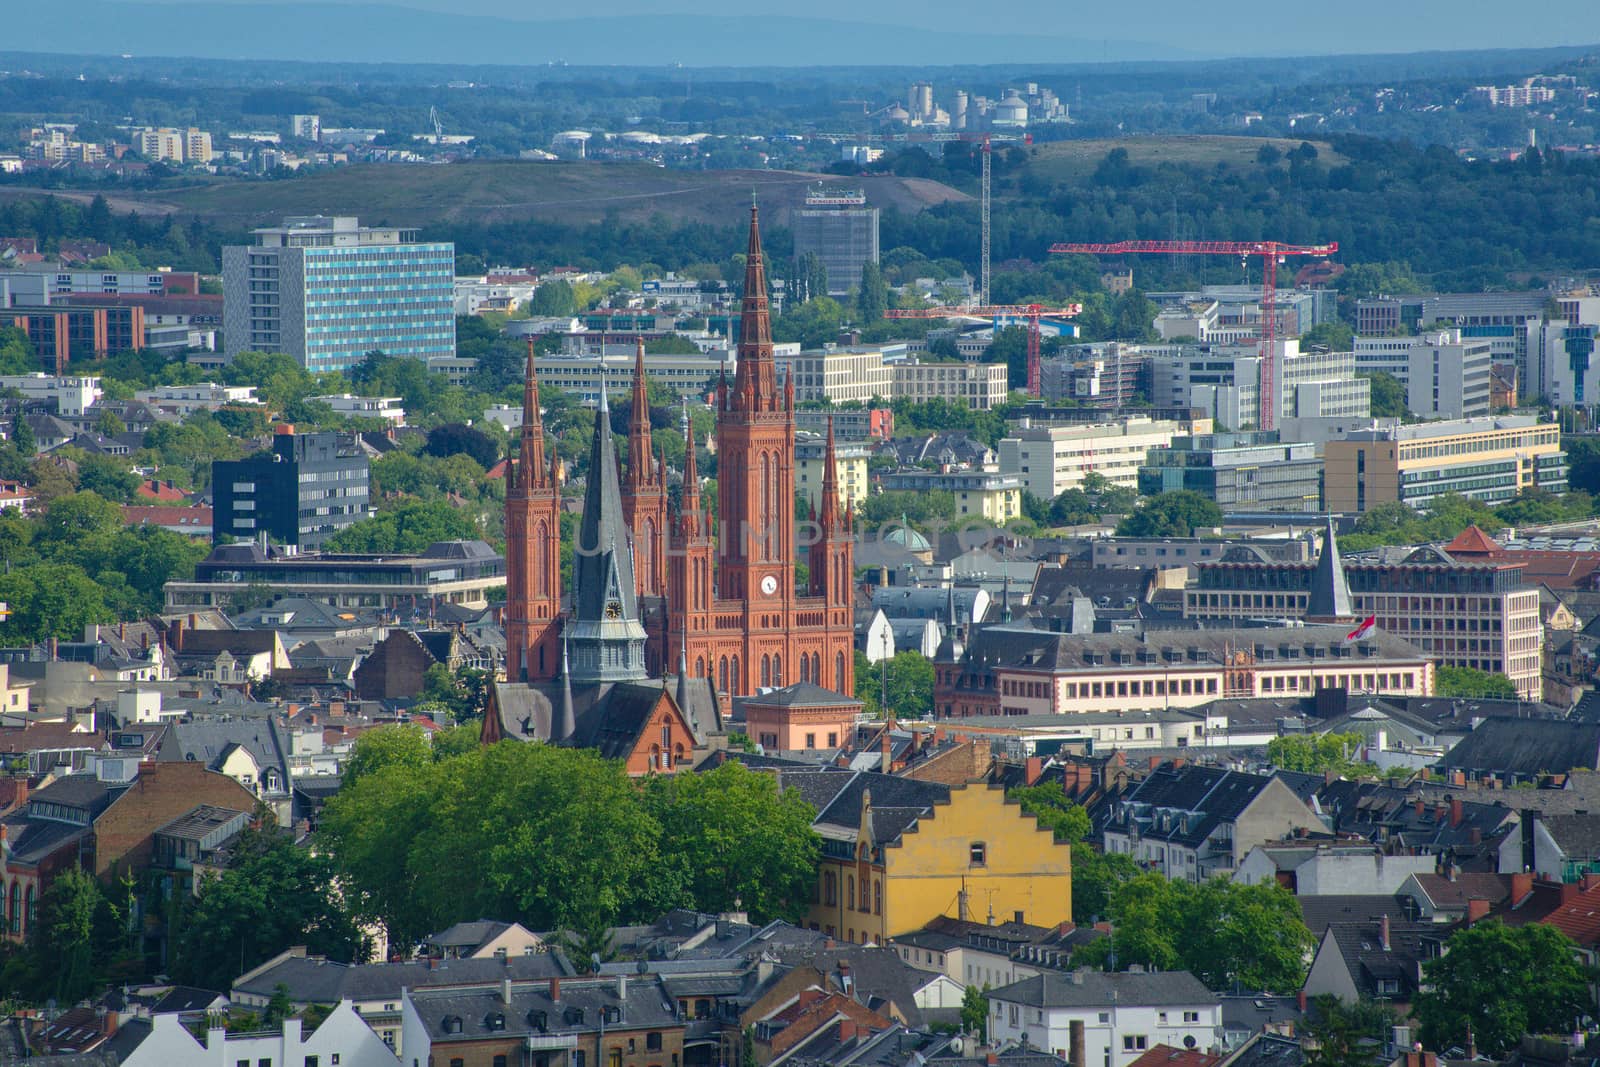 Cityscape of Wiesbaden by eyeemudo